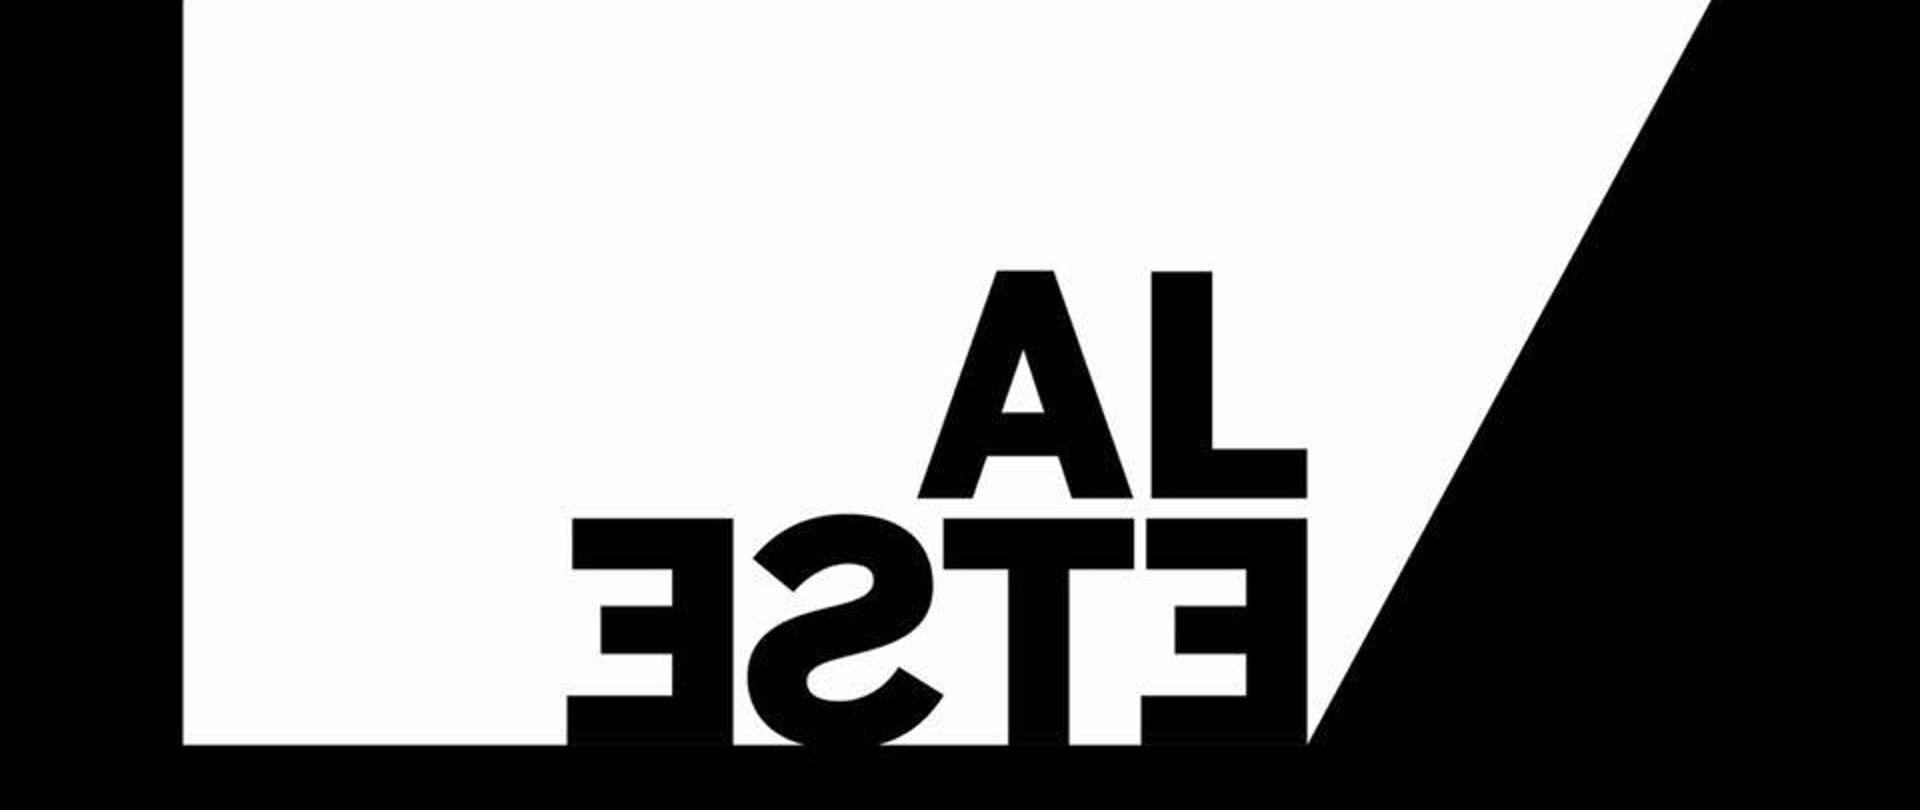 al_este_logo